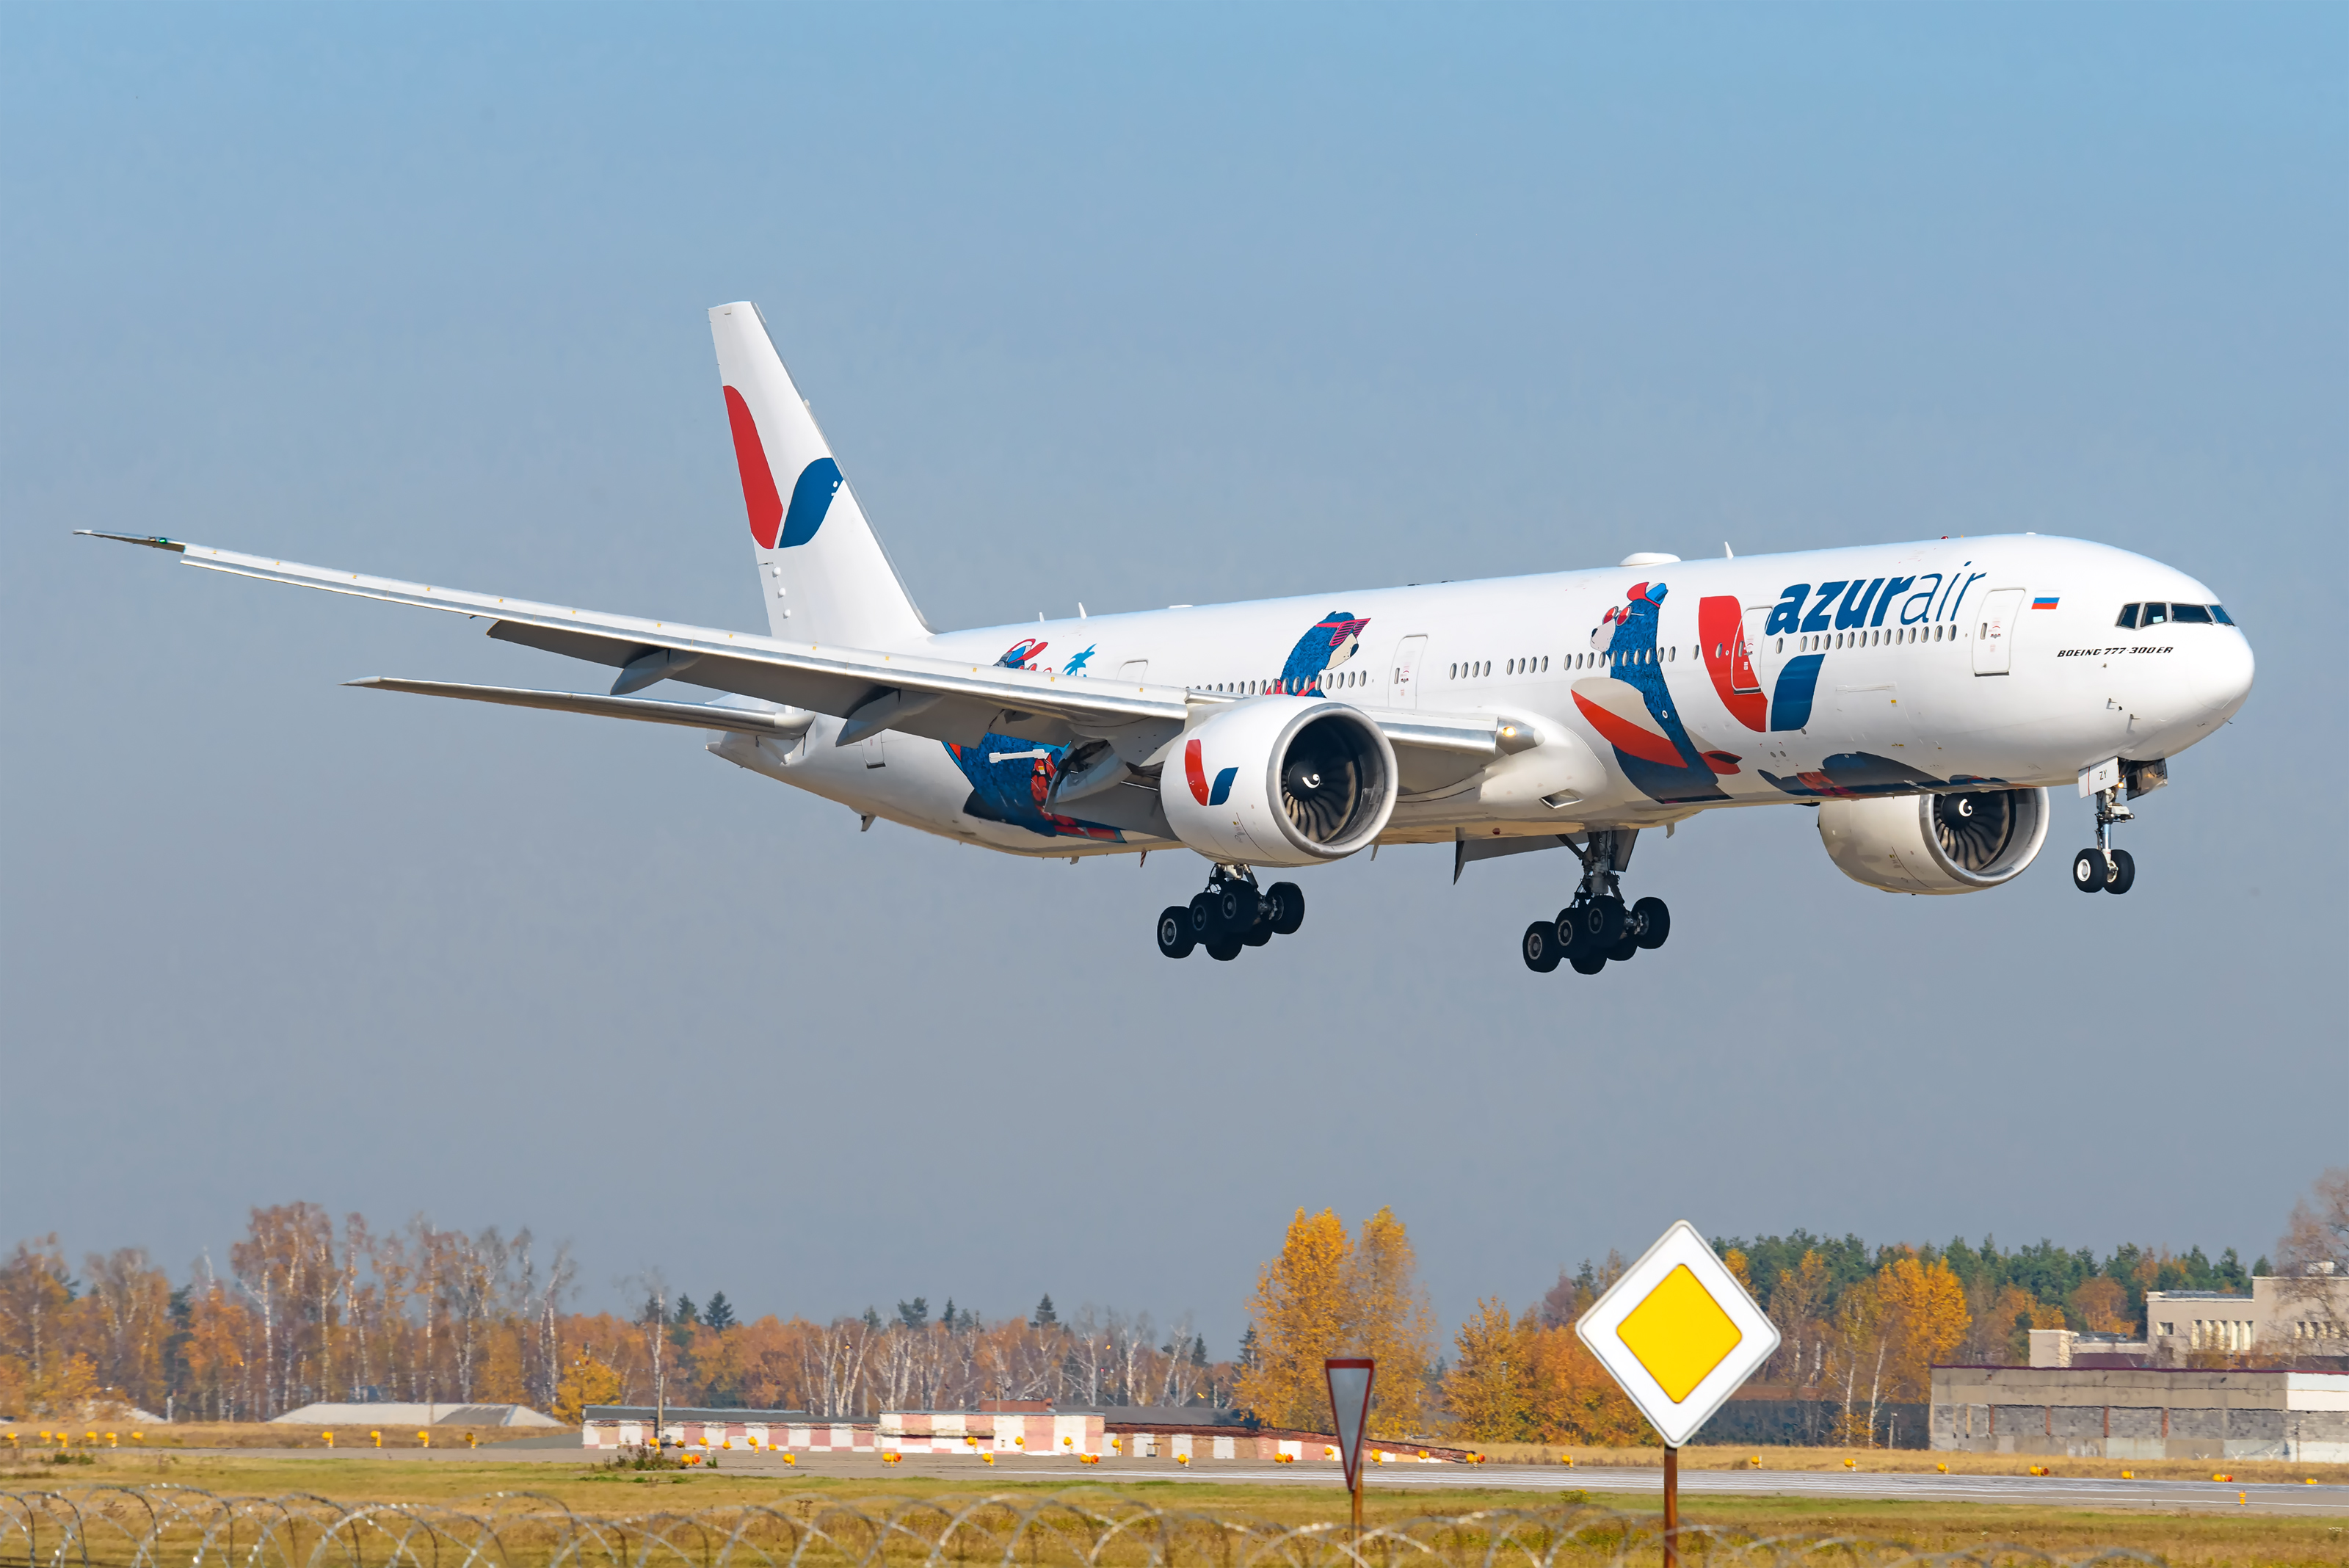 AZUR air, Новости, 26 Октября 2018,Авиакомпания AZUR air стала лидером по объему перевозок из России в трех турецких аэропортах за девять месяцев 2018 года